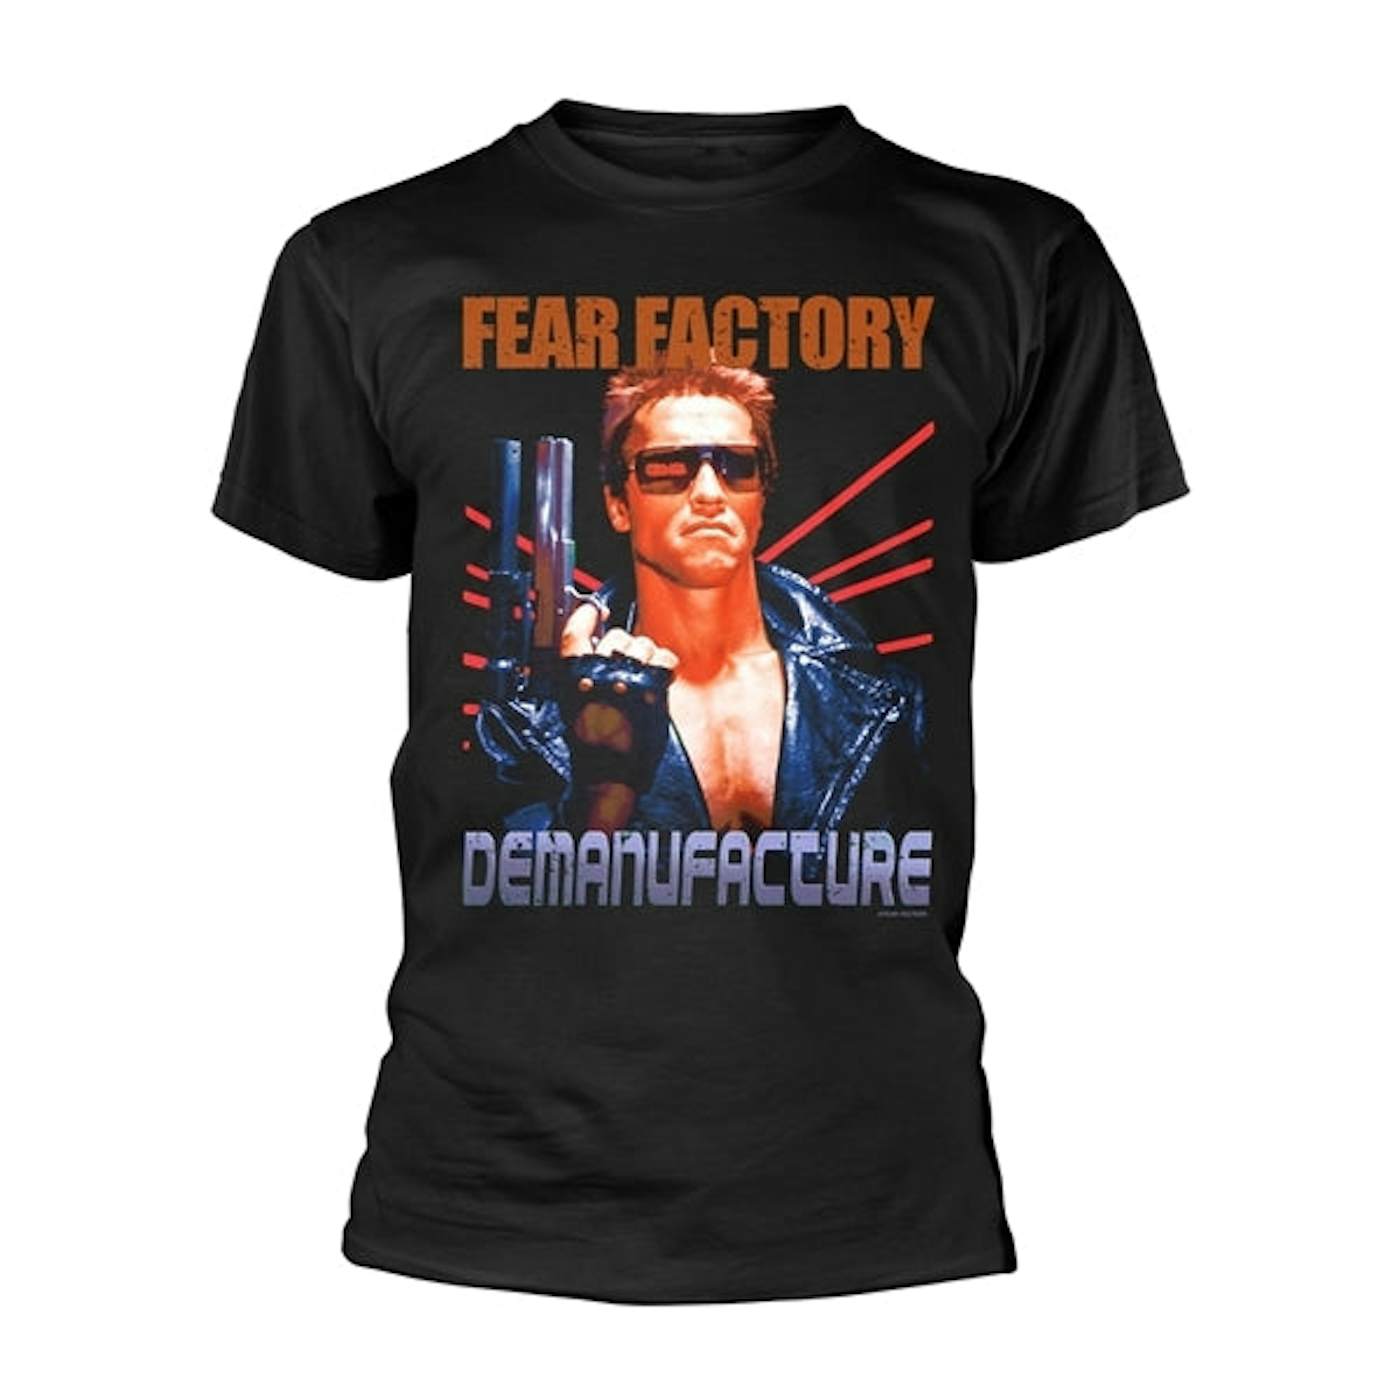 Fear Factory T-Shirt - Terminator